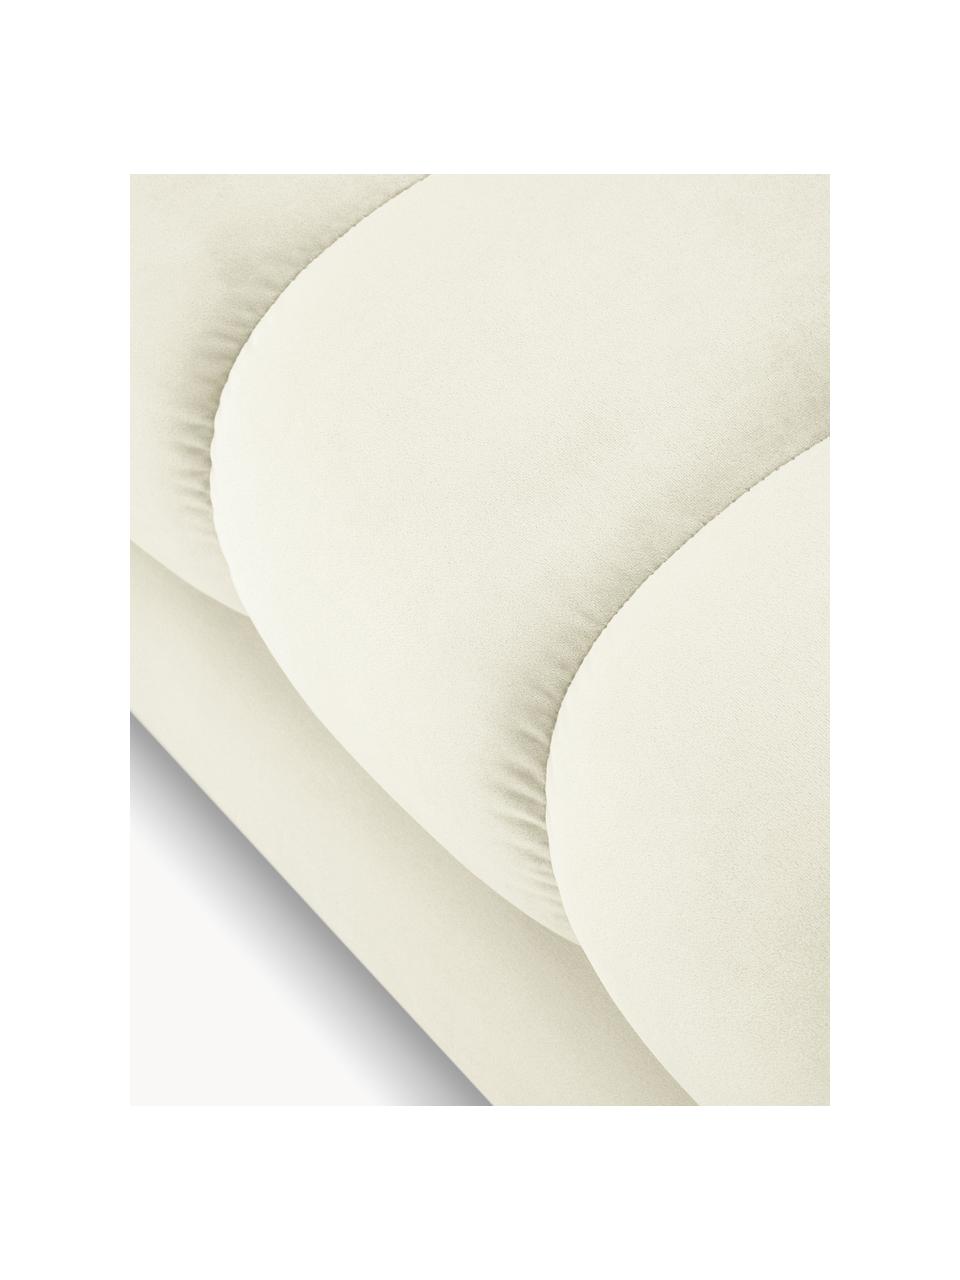 Canapé d'angle 5 places en velours Mamaia, Velours blanc crème, larg. 293 x prof. 185 cm, méridienne à droite